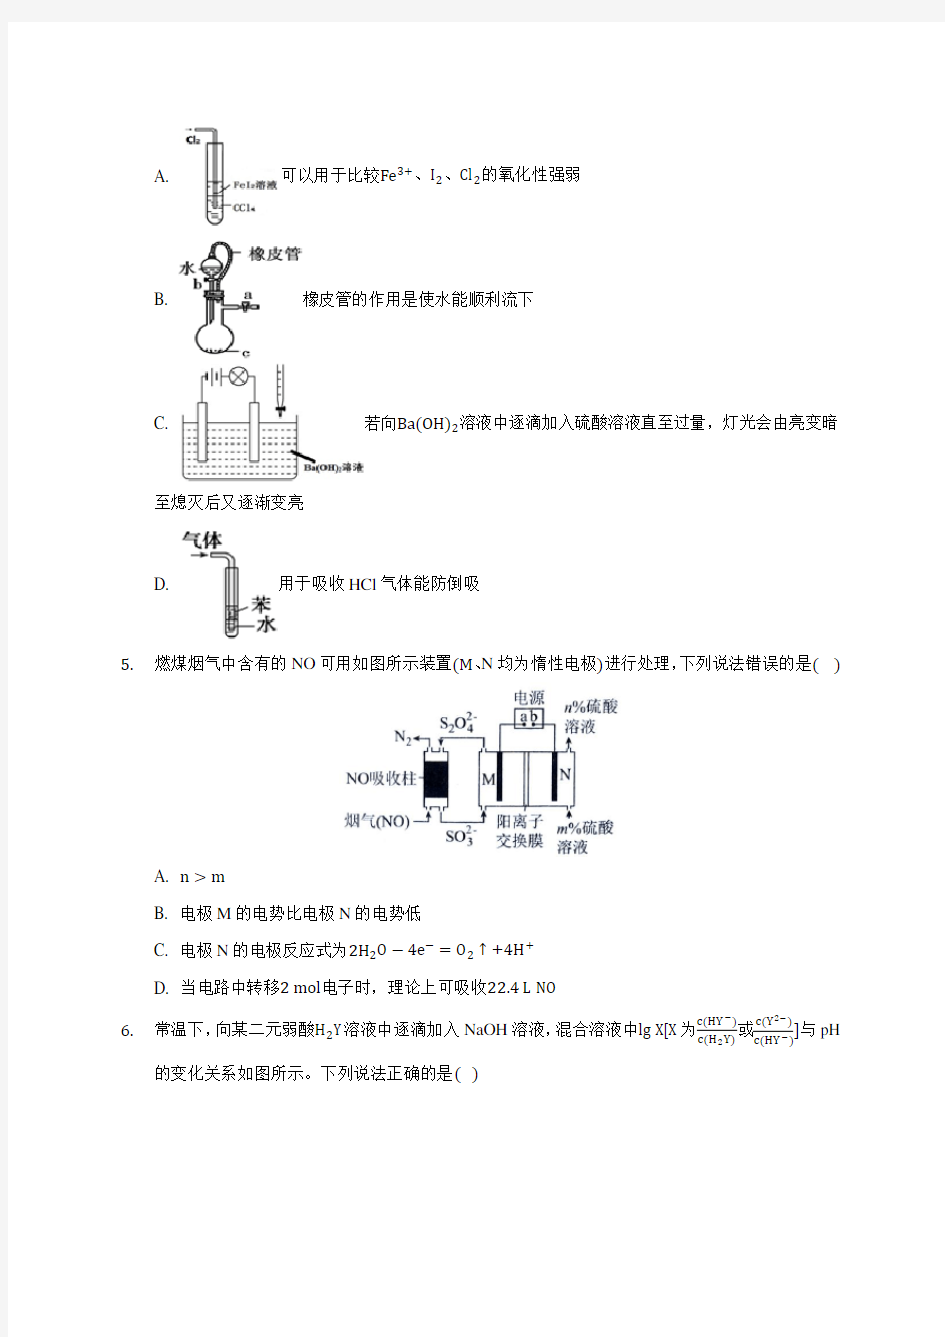 2020年武汉市华中师大一附中高考化学模拟试卷(10)(含答案解析)